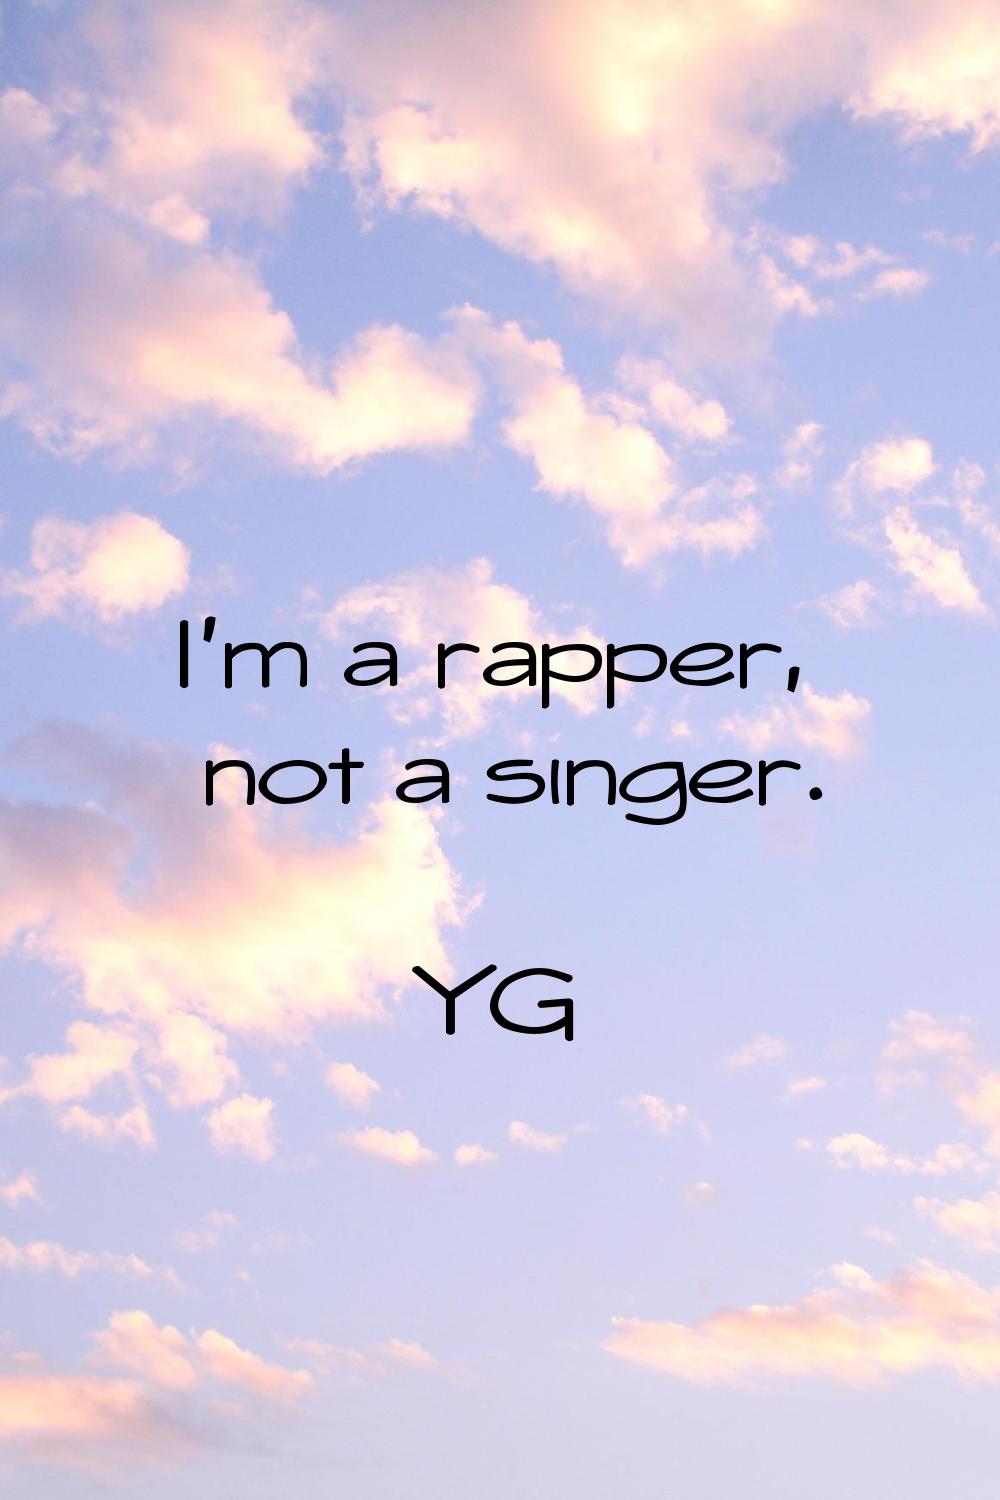 I'm a rapper, not a singer.